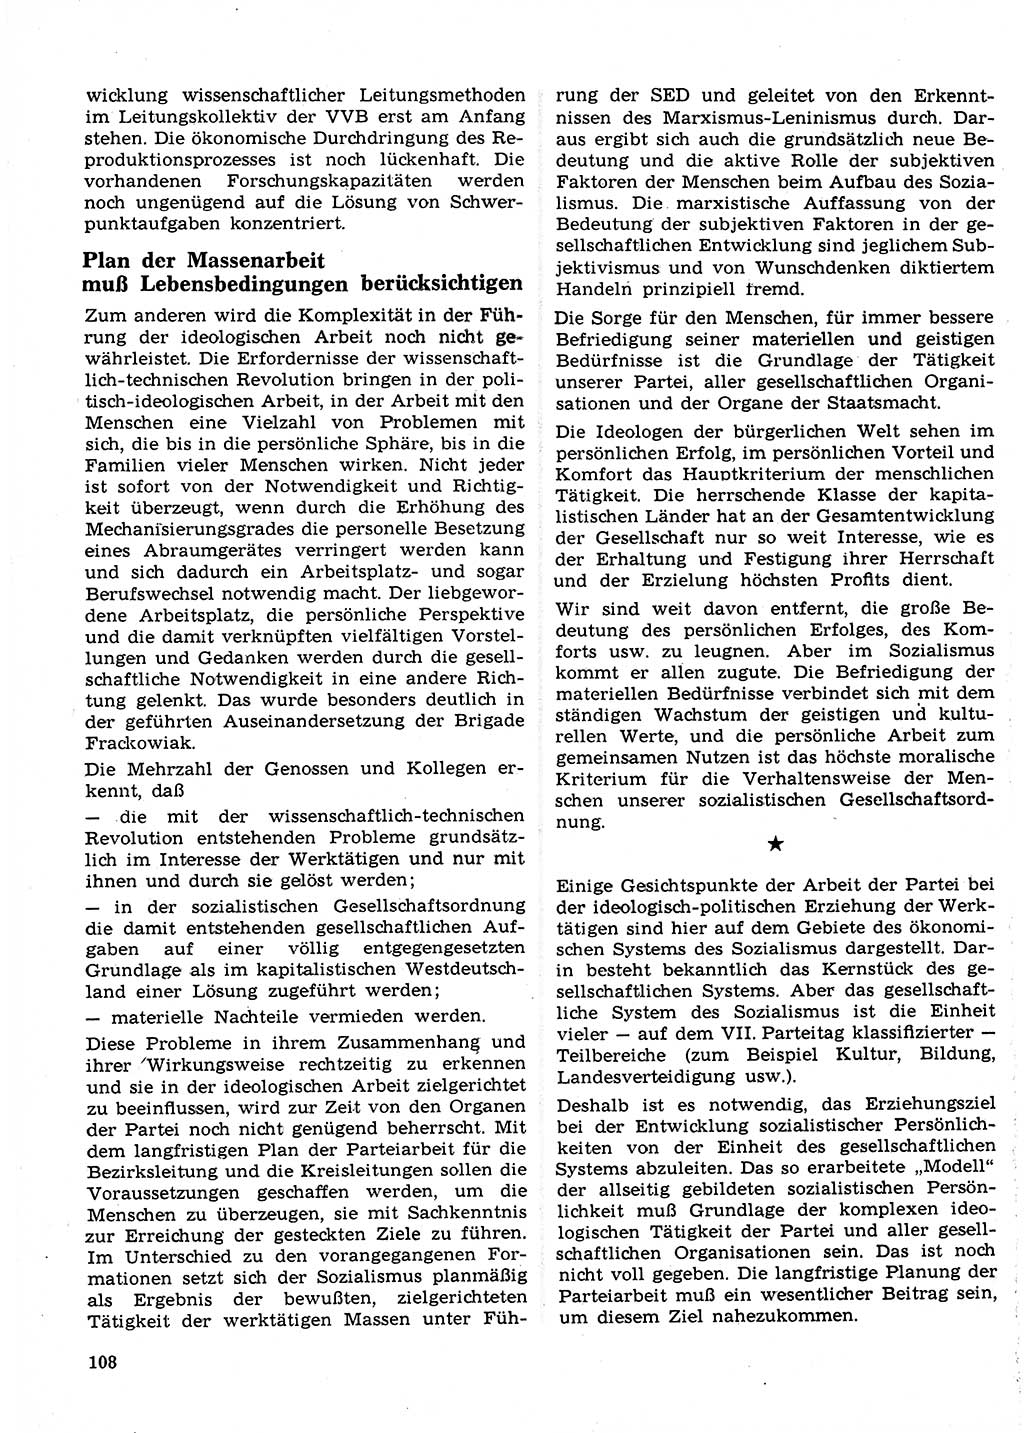 Neuer Weg (NW), Organ des Zentralkomitees (ZK) der SED (Sozialistische Einheitspartei Deutschlands) für Fragen des Parteilebens, 23. Jahrgang [Deutsche Demokratische Republik (DDR)] 1968, Seite 108 (NW ZK SED DDR 1968, S. 108)